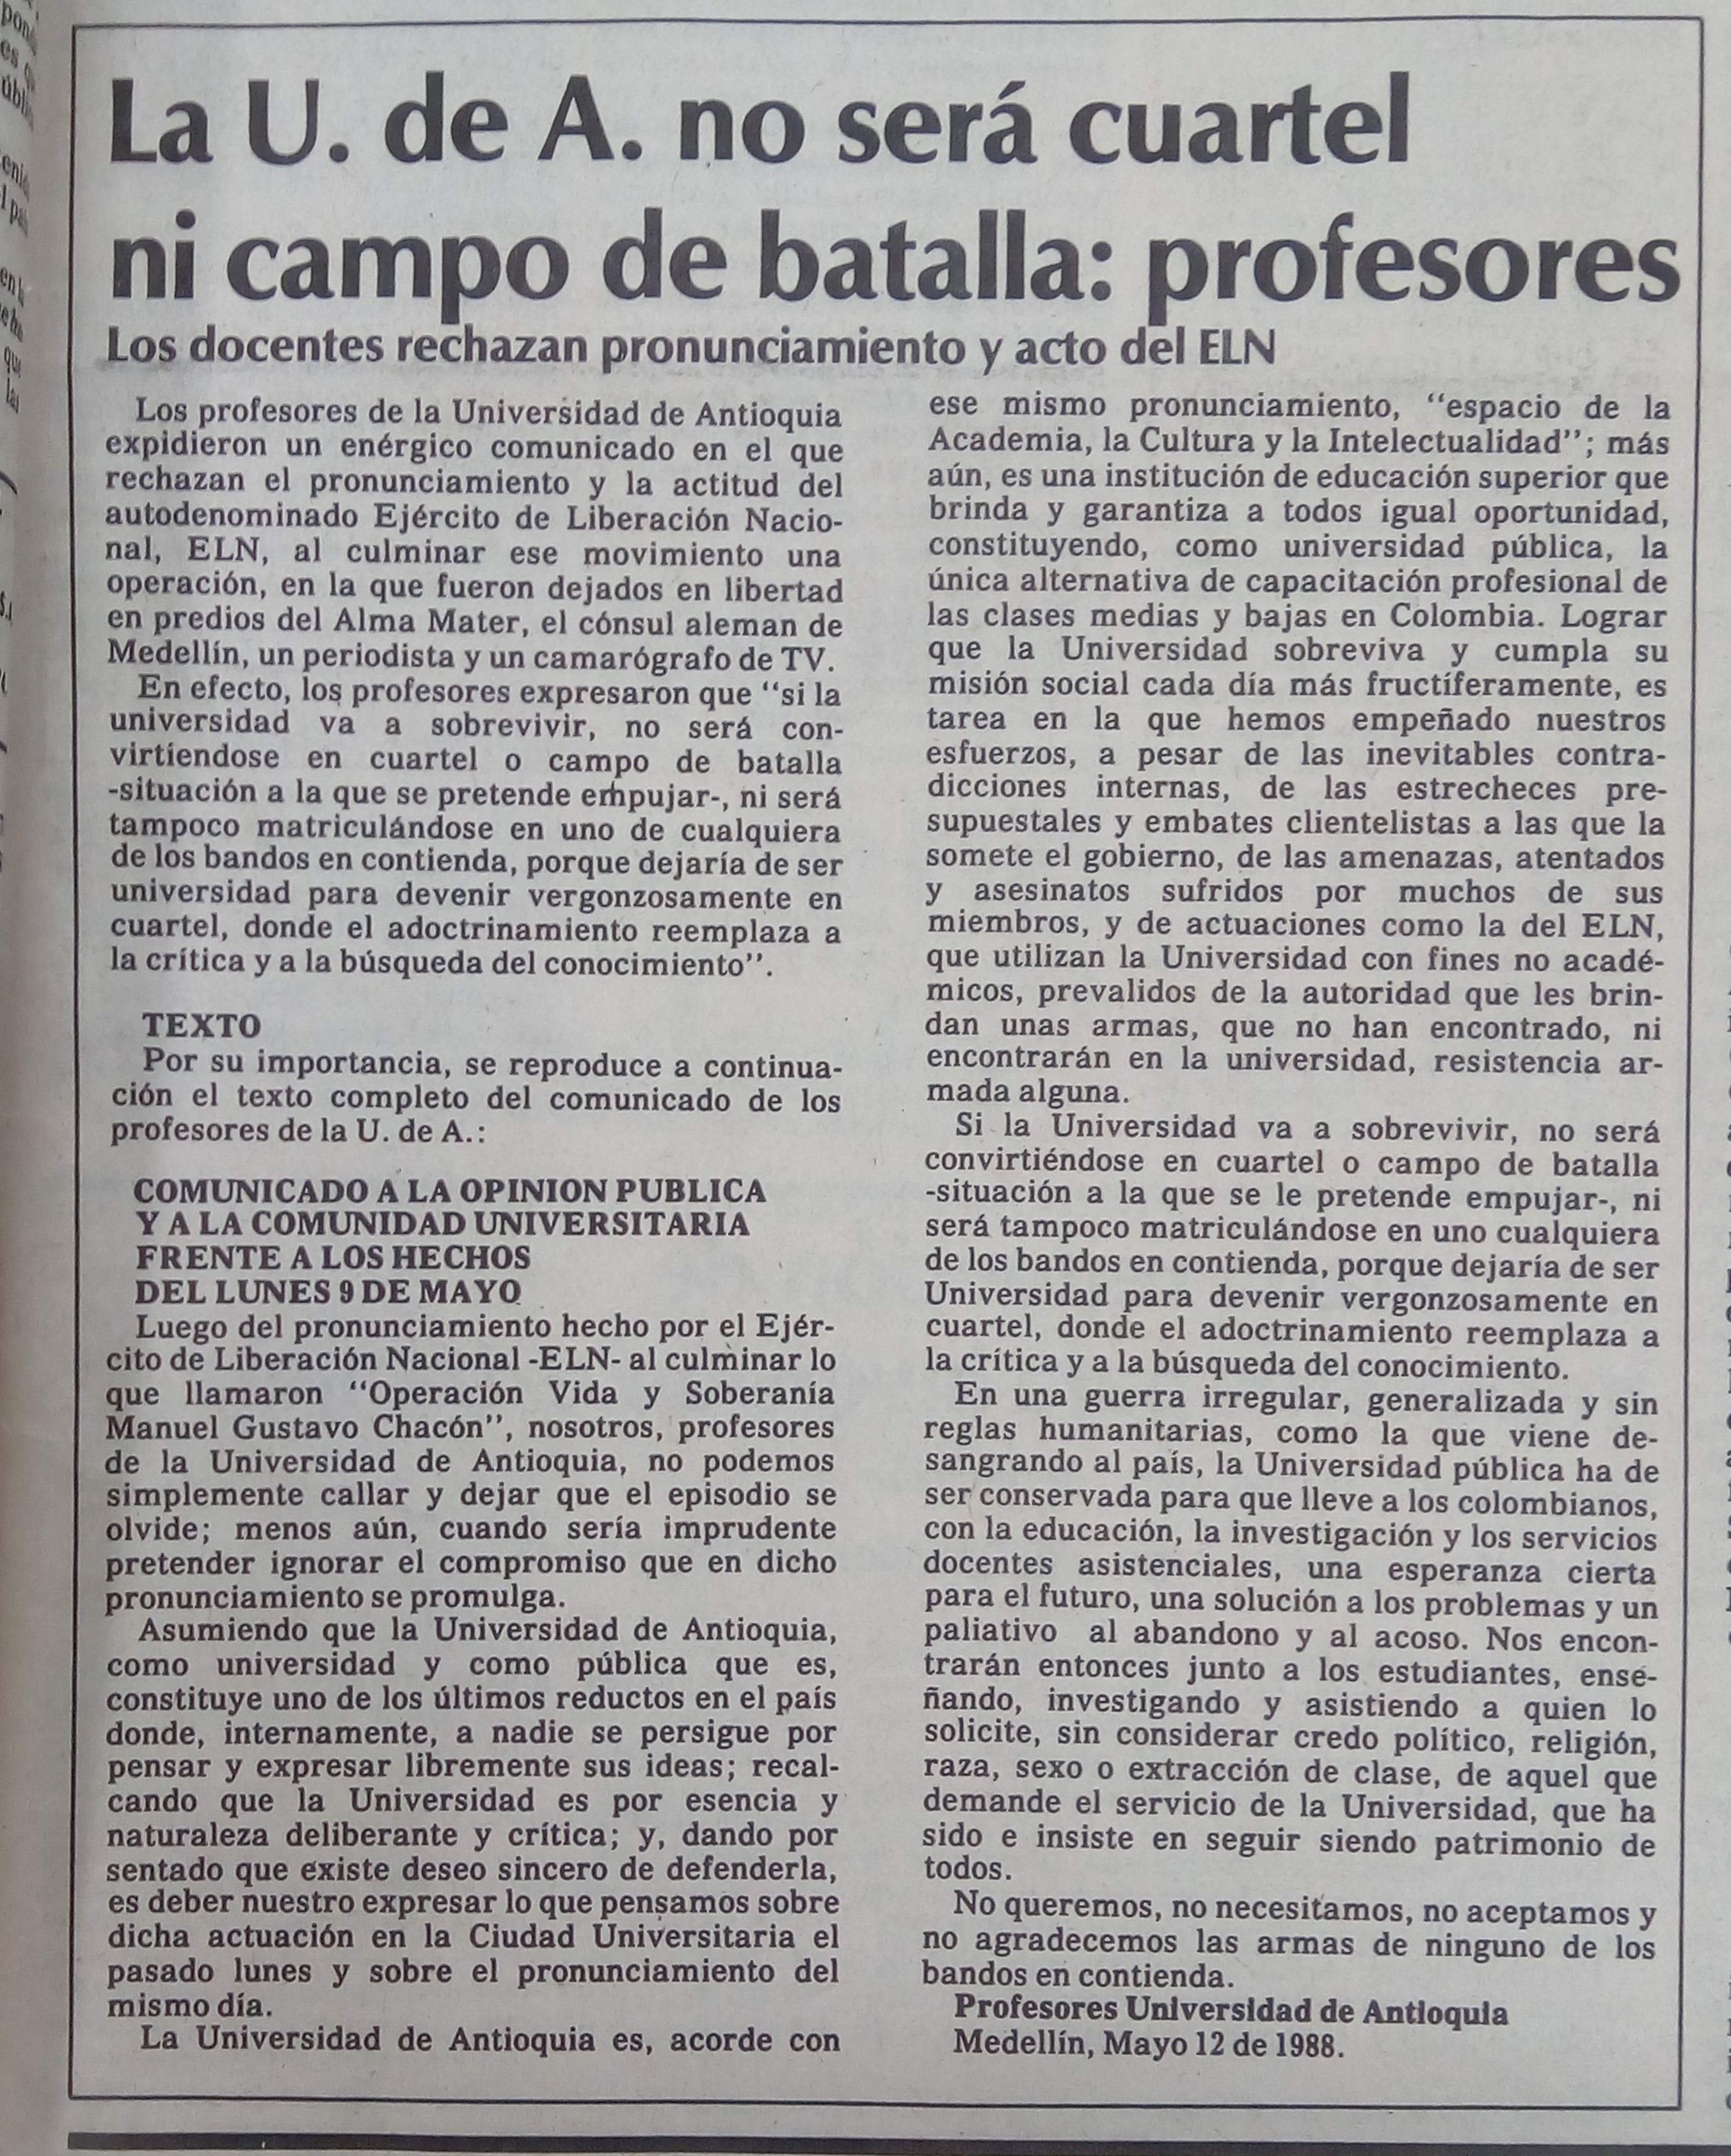 Fotografía tomada de la edición del 14 de mayo de 1988 del periódico El Colombiano